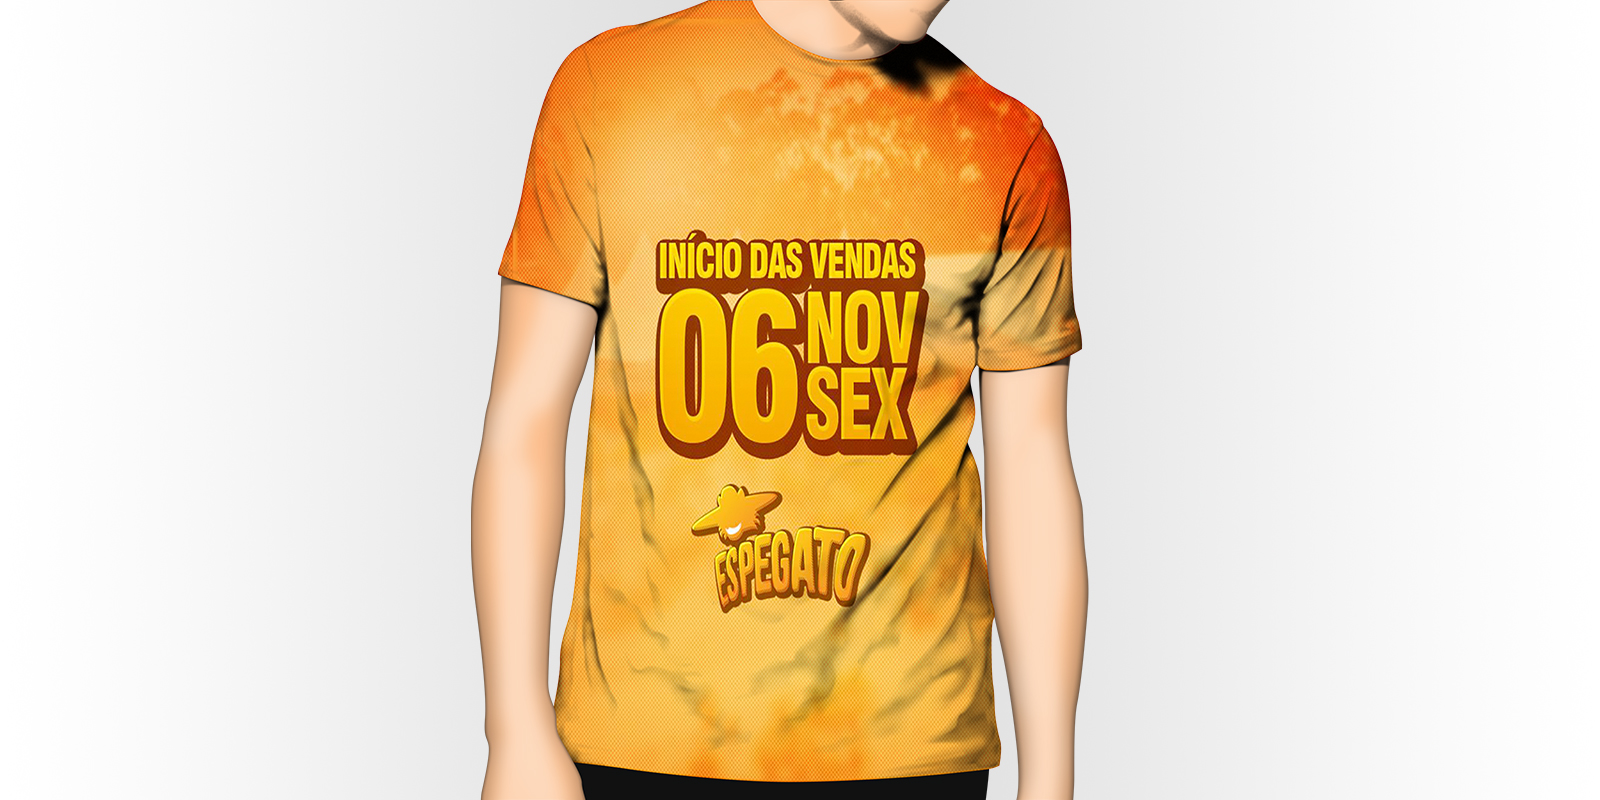 Camiseta Espegato 2015